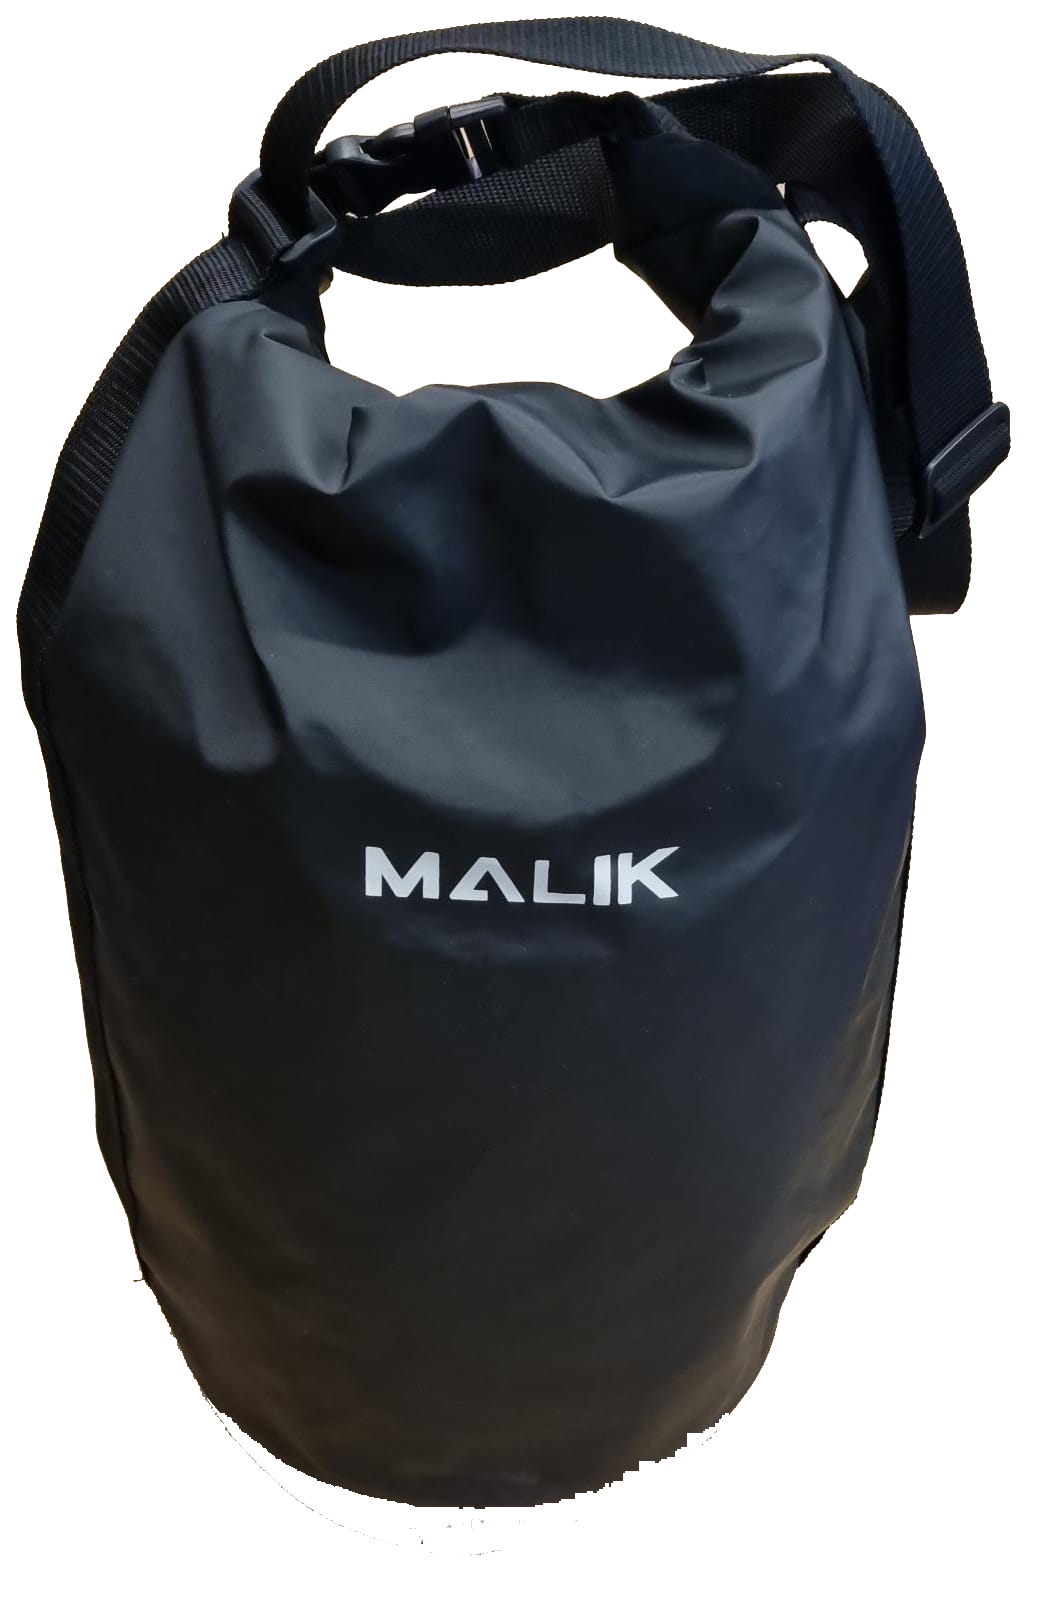 MALIK Ball Bag.png